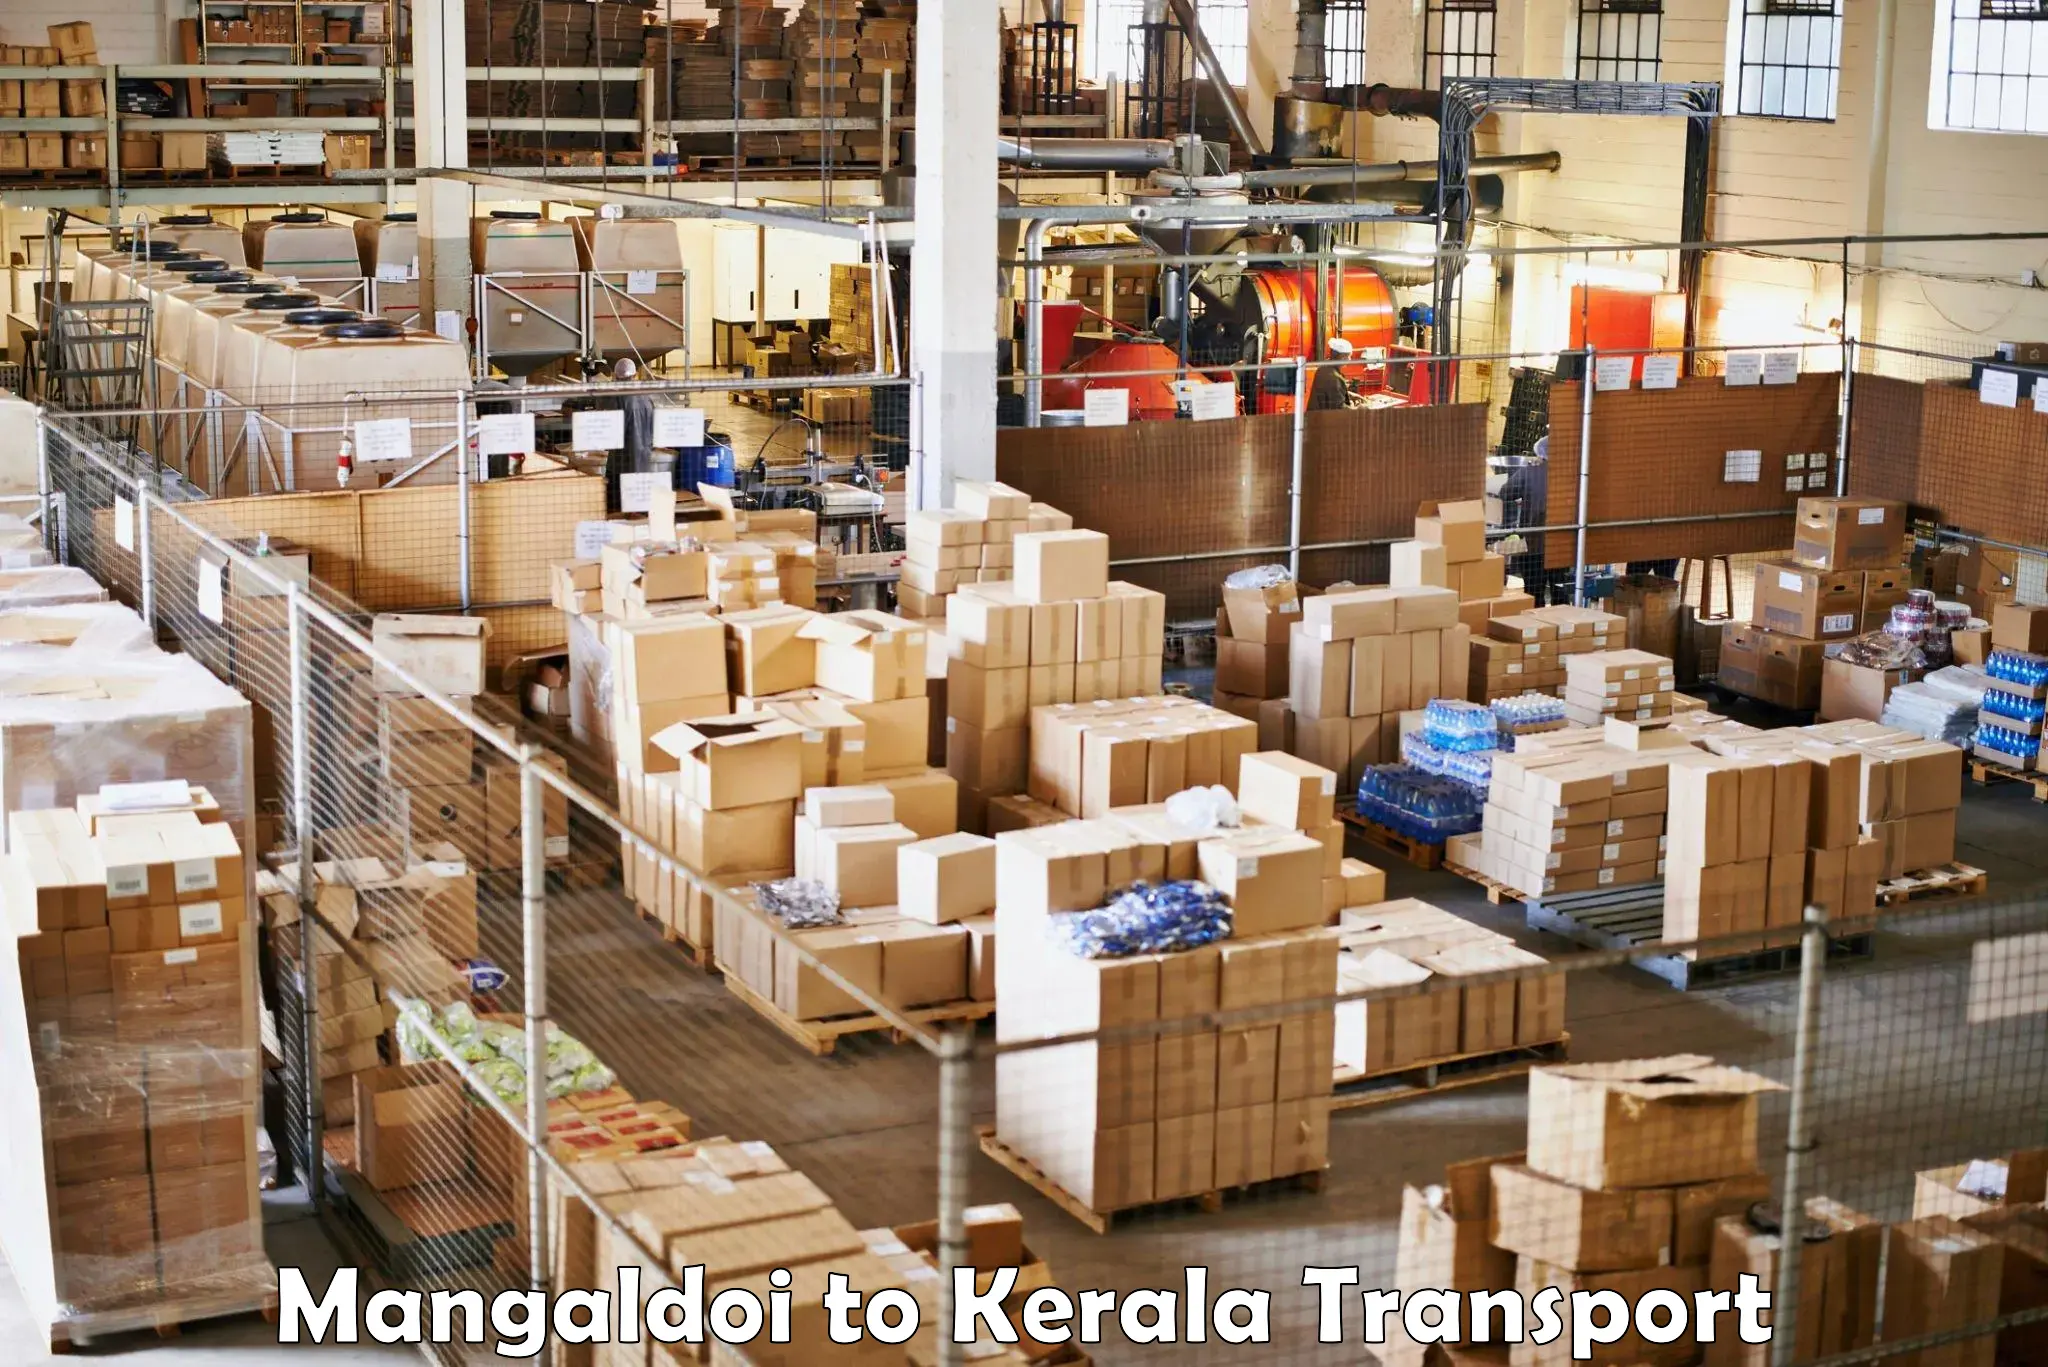 Air freight transport services Mangaldoi to Kakkayam